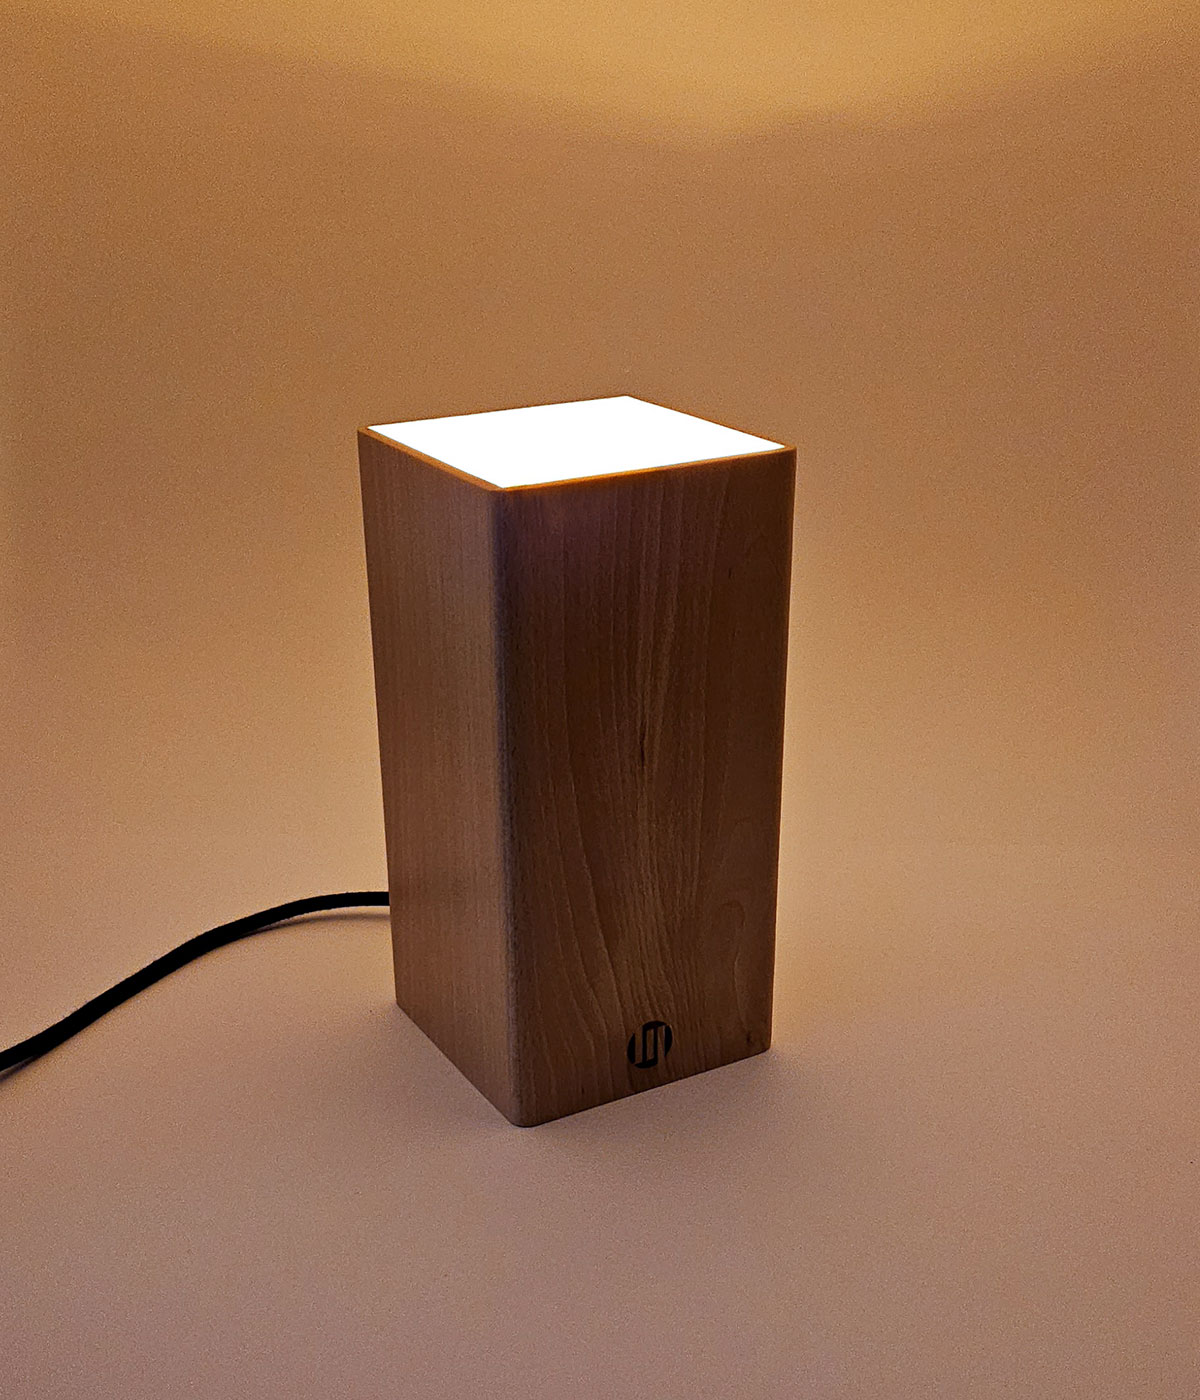 Lire la suite à propos de l’article Notre première lampe de table toute en bois est en ligne